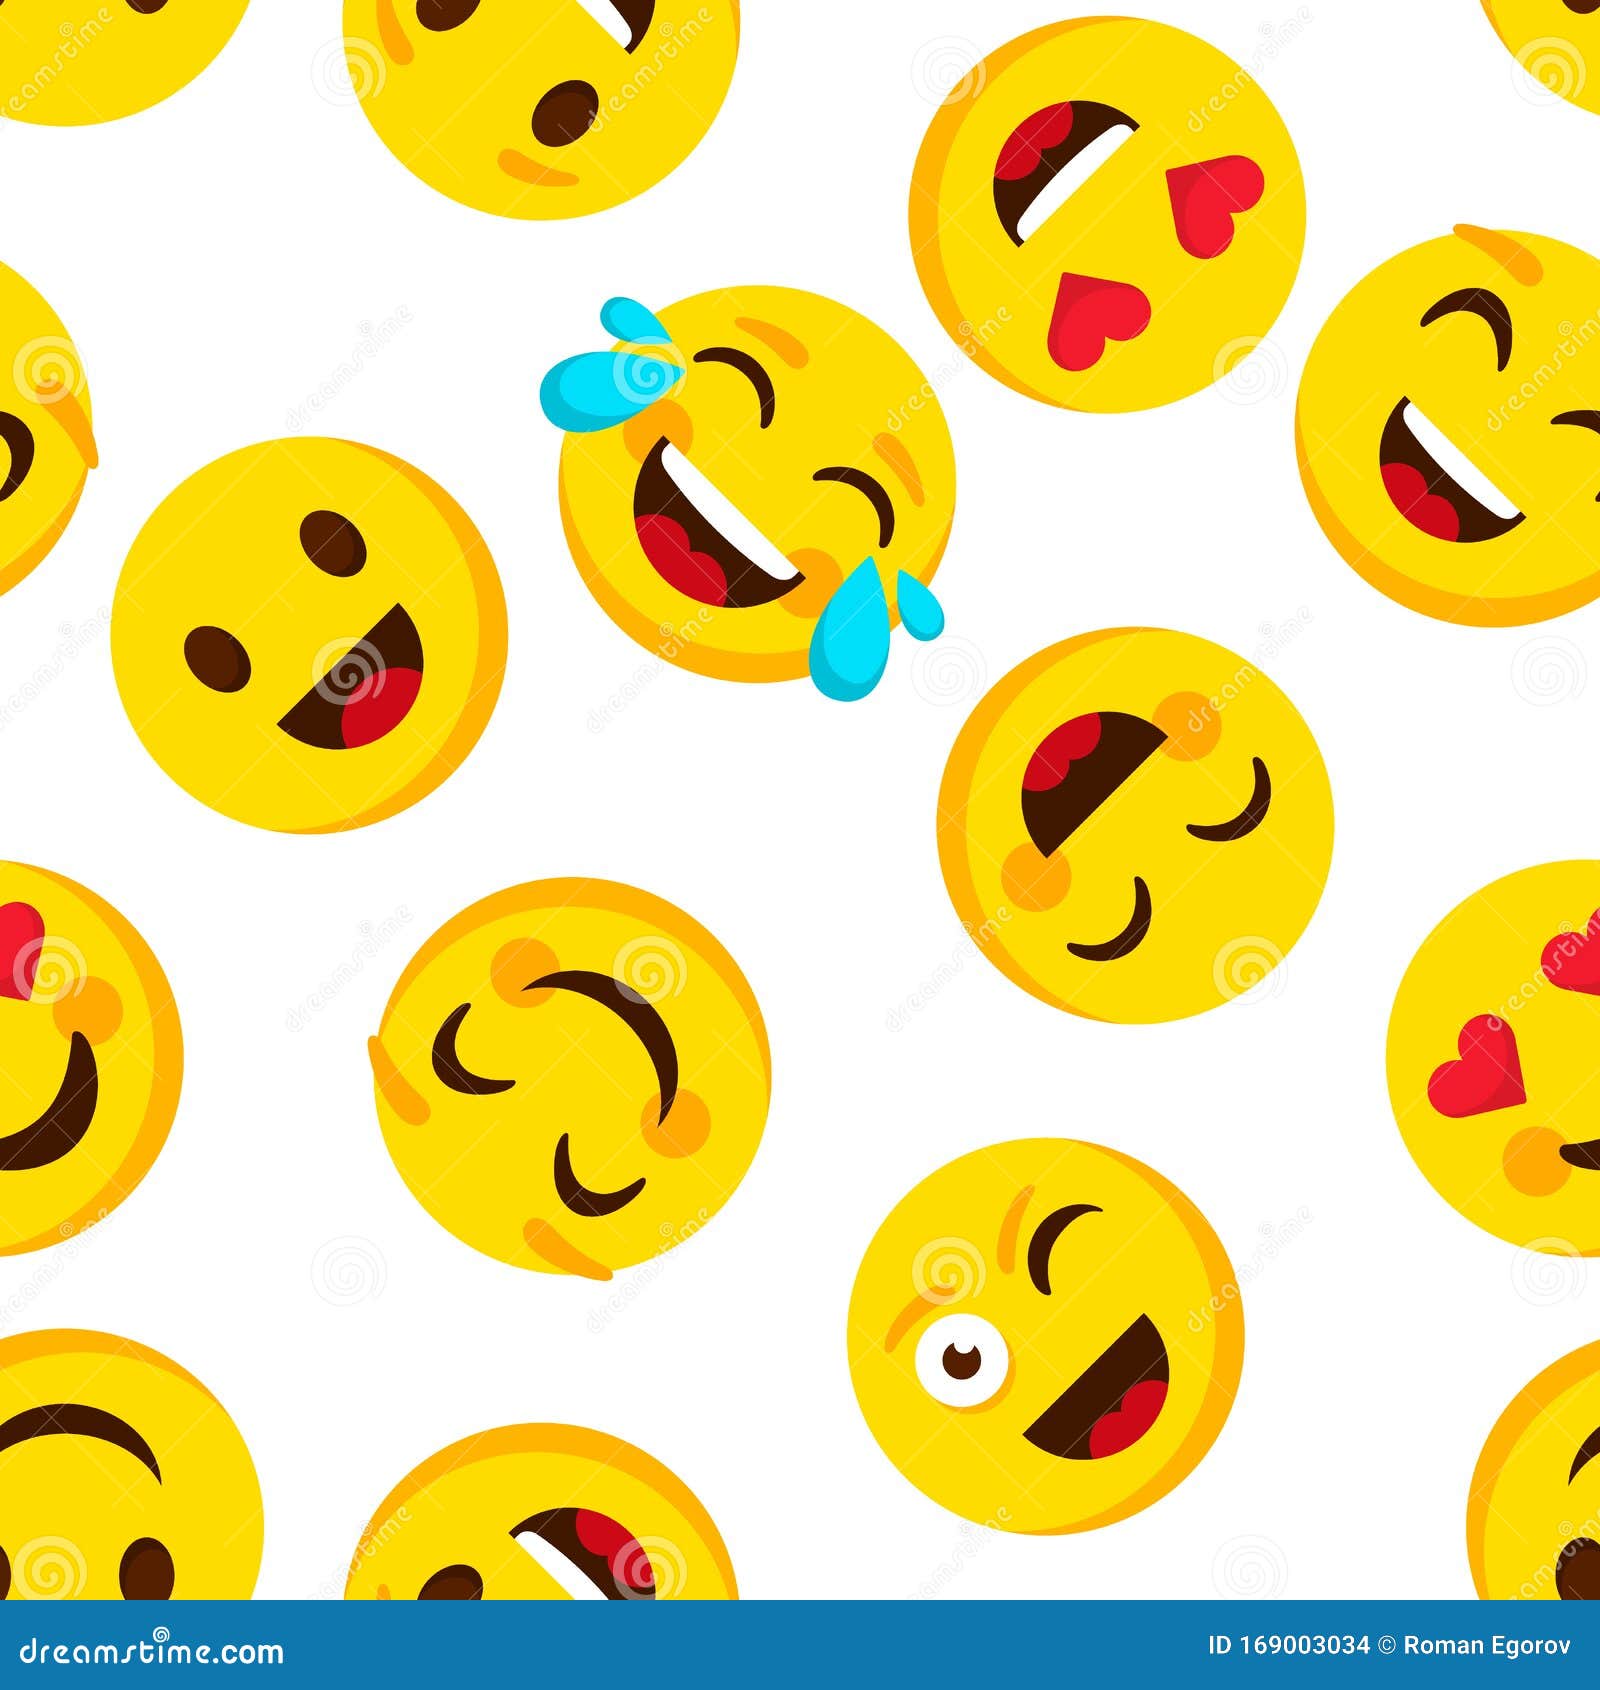 Chào mừng đến với hình nền Emoji đáng yêu, hãy chuẩn bị để được đắm chìm trong một thế giới màu sắc và cảm xúc đầy ấn tượng!